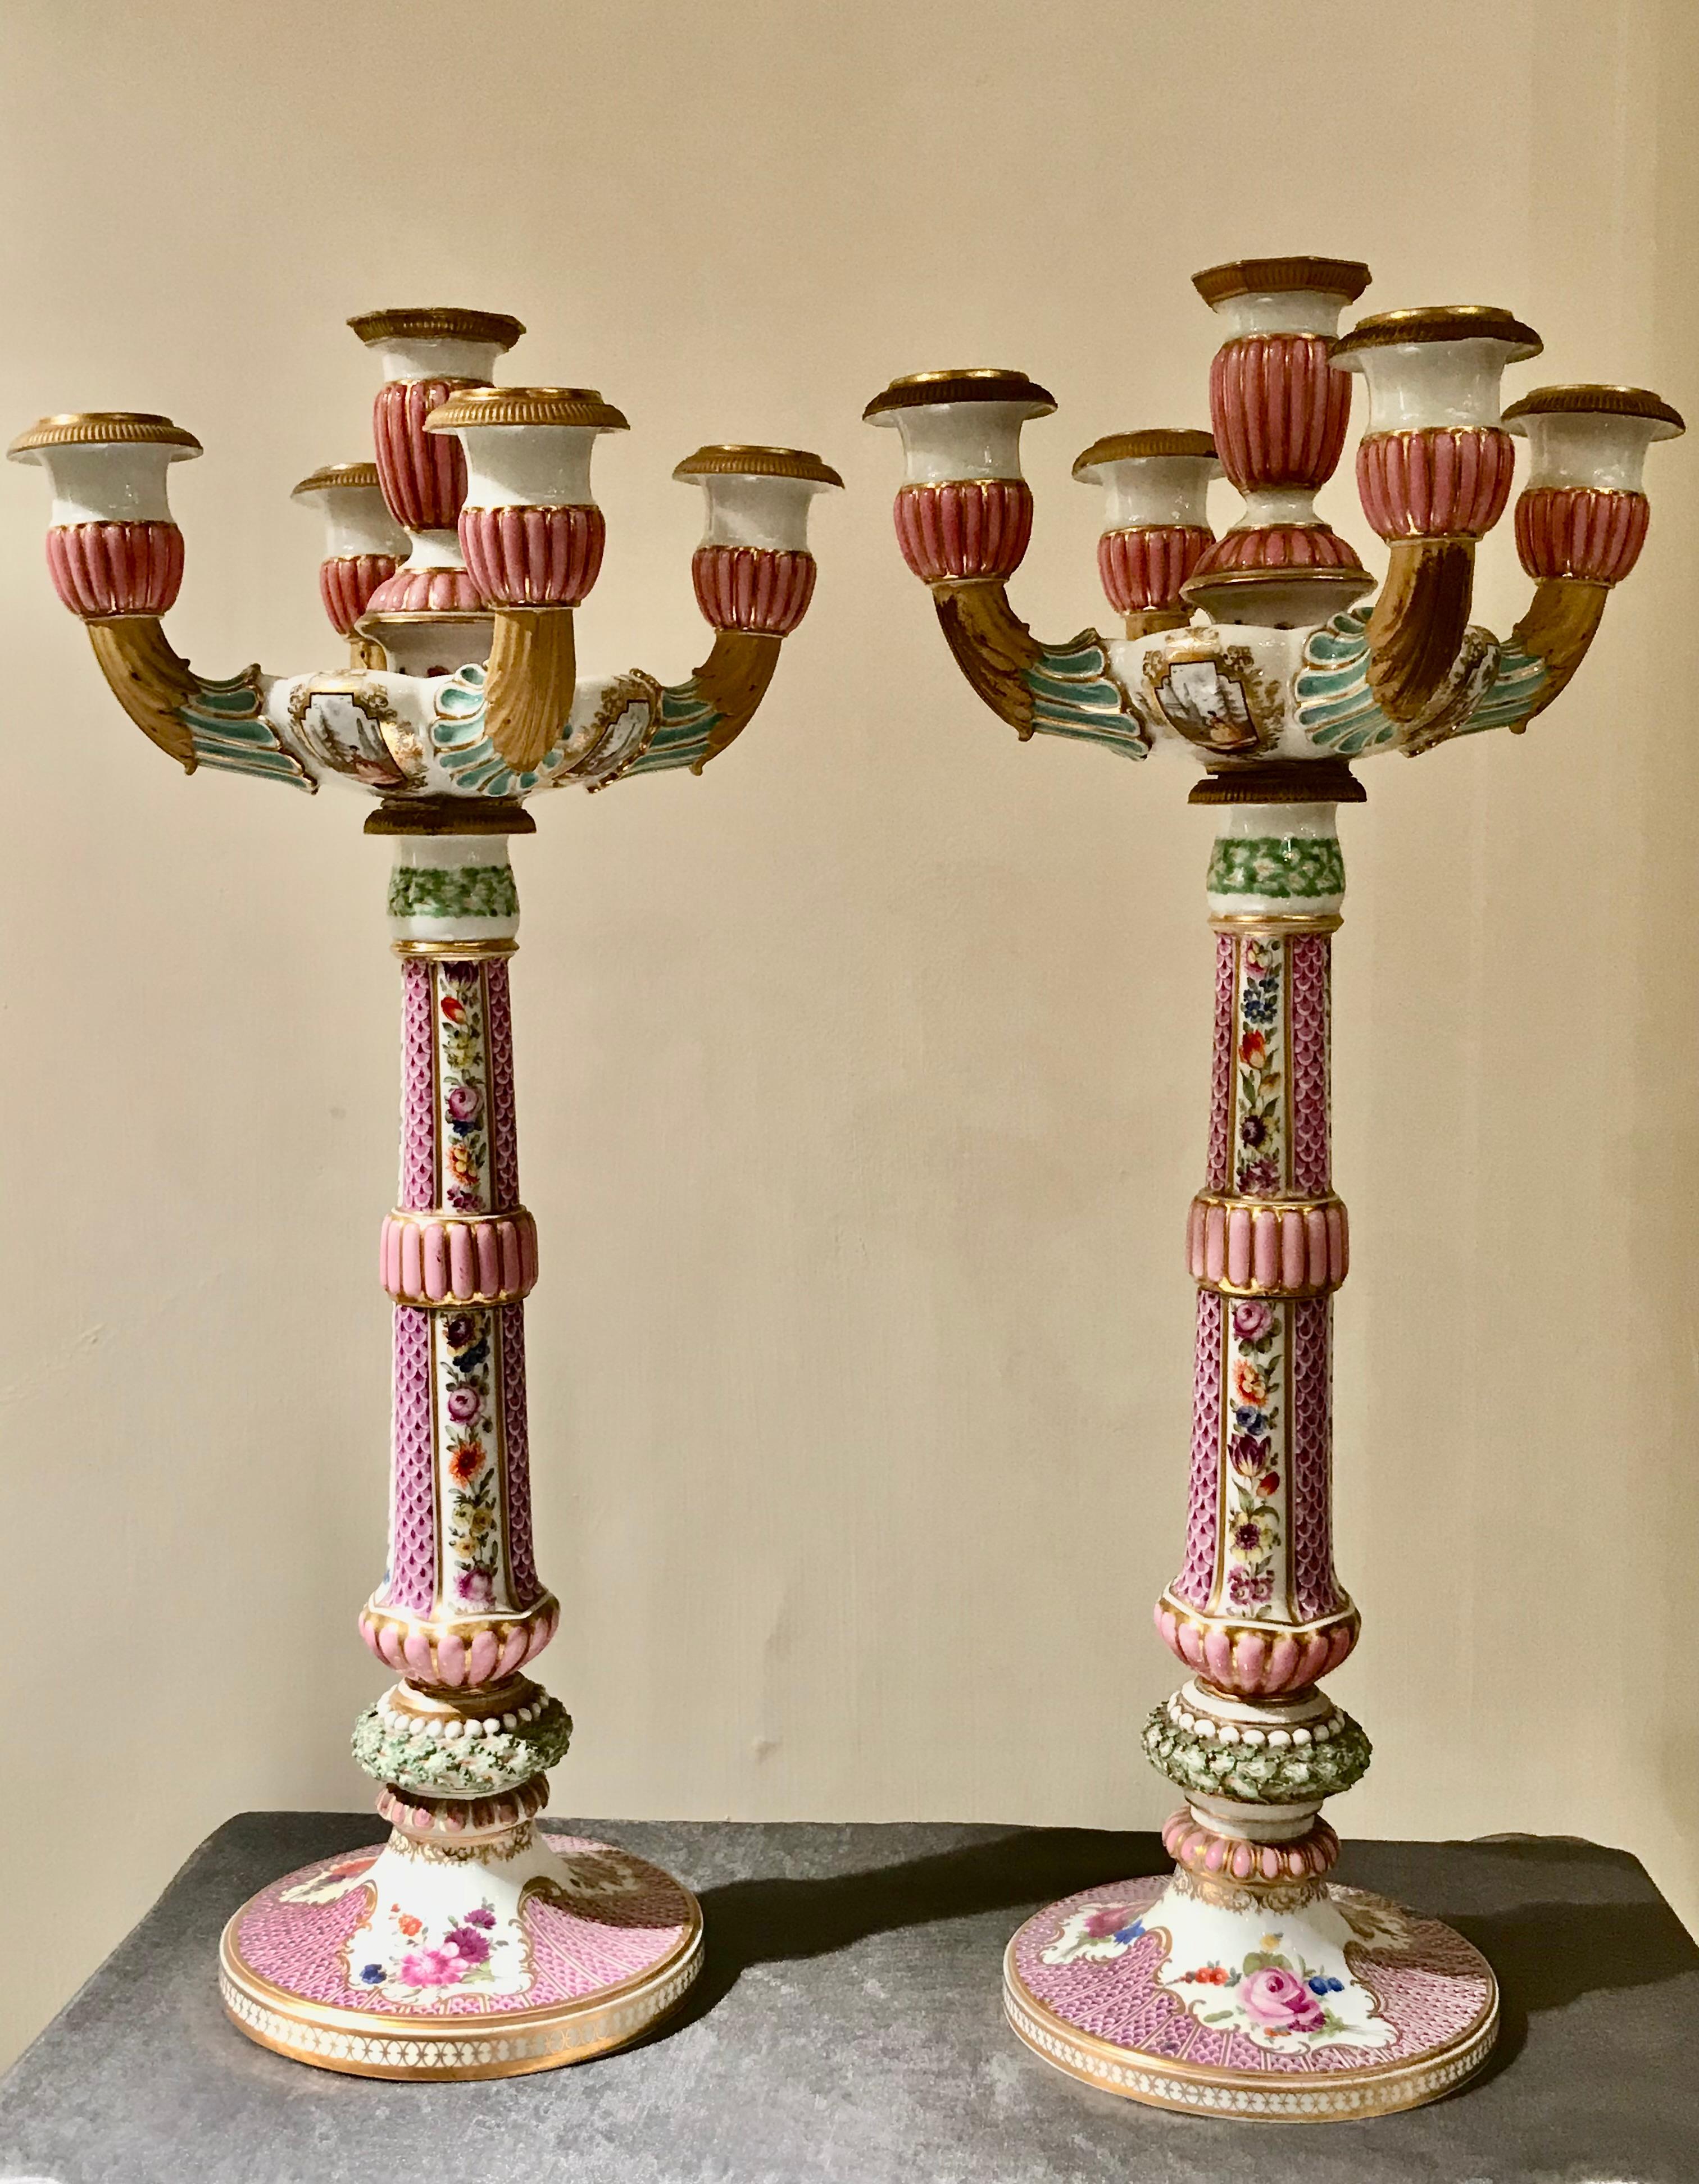 Beau travail d'une grande force expressive. Spectaculaire paire de girandoles/chandeliers de table en porcelaine de Meissen, Allemagne, marquée d'une épée. Approx. 1790 - 1810, Période Marcolini-.